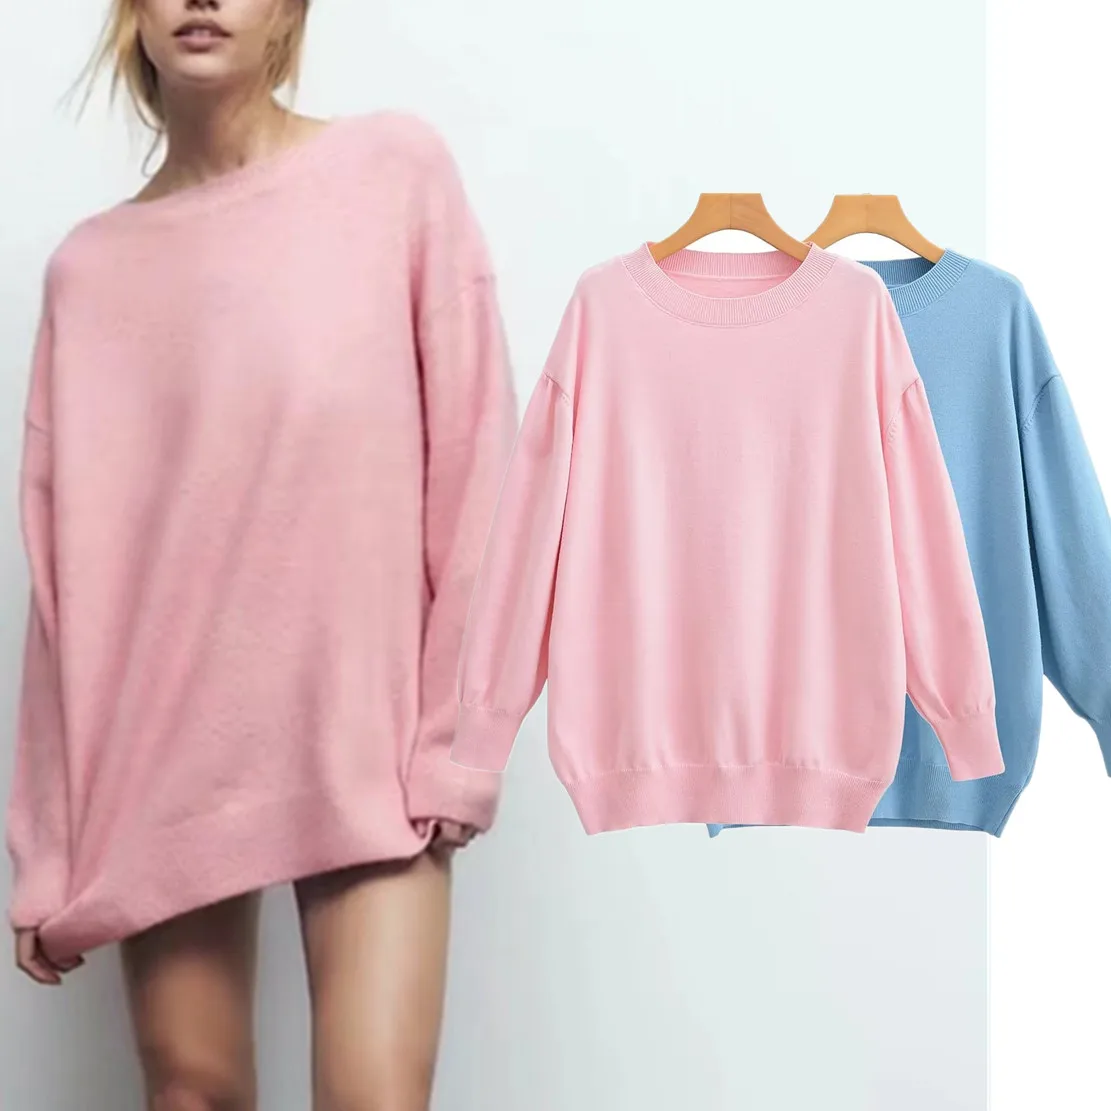 

Elmsk Ins Blogger Casual Knitwear Fashion Loose Long Sweaters Women